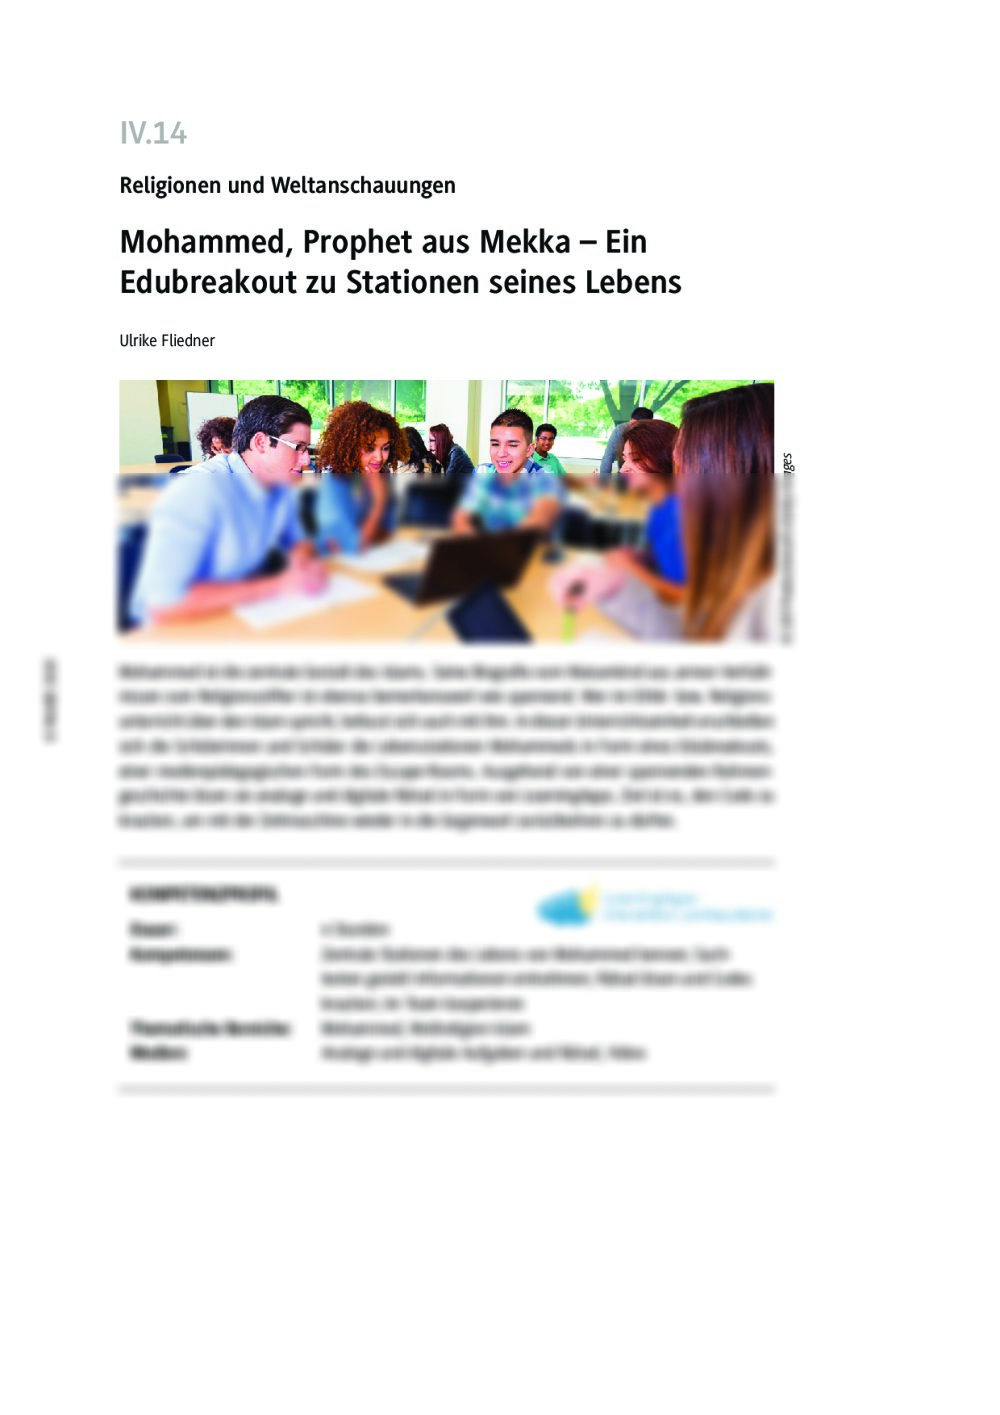 Mohammed, Prophet aus Mekka - Seite 1